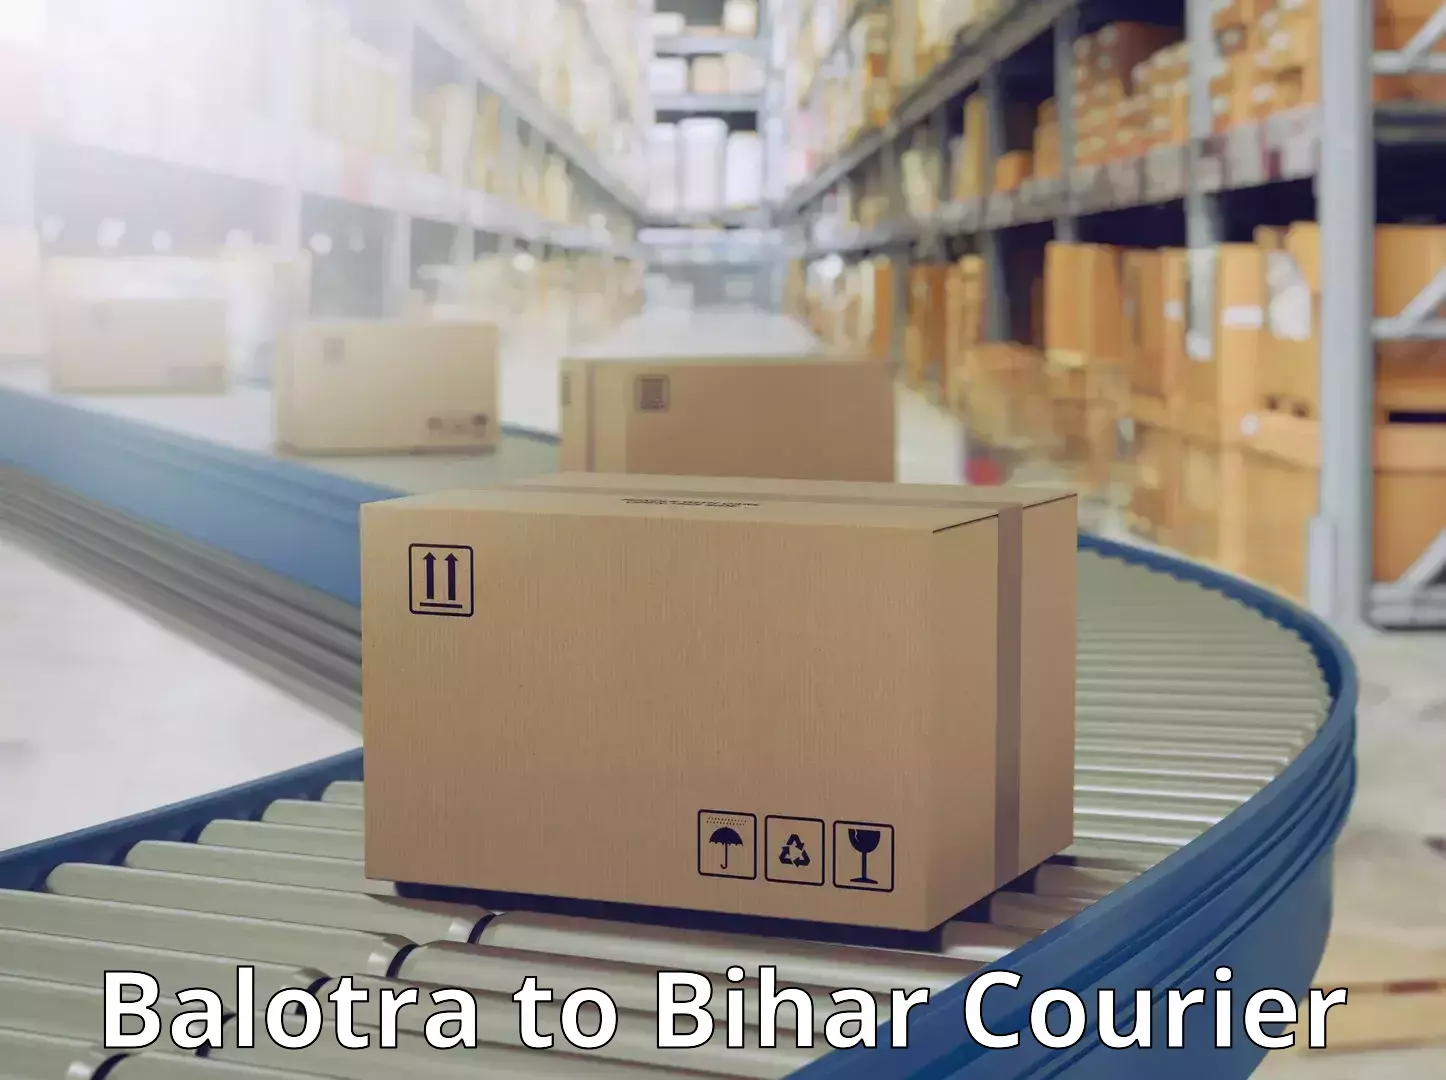 24/7 shipping services Balotra to Bihar